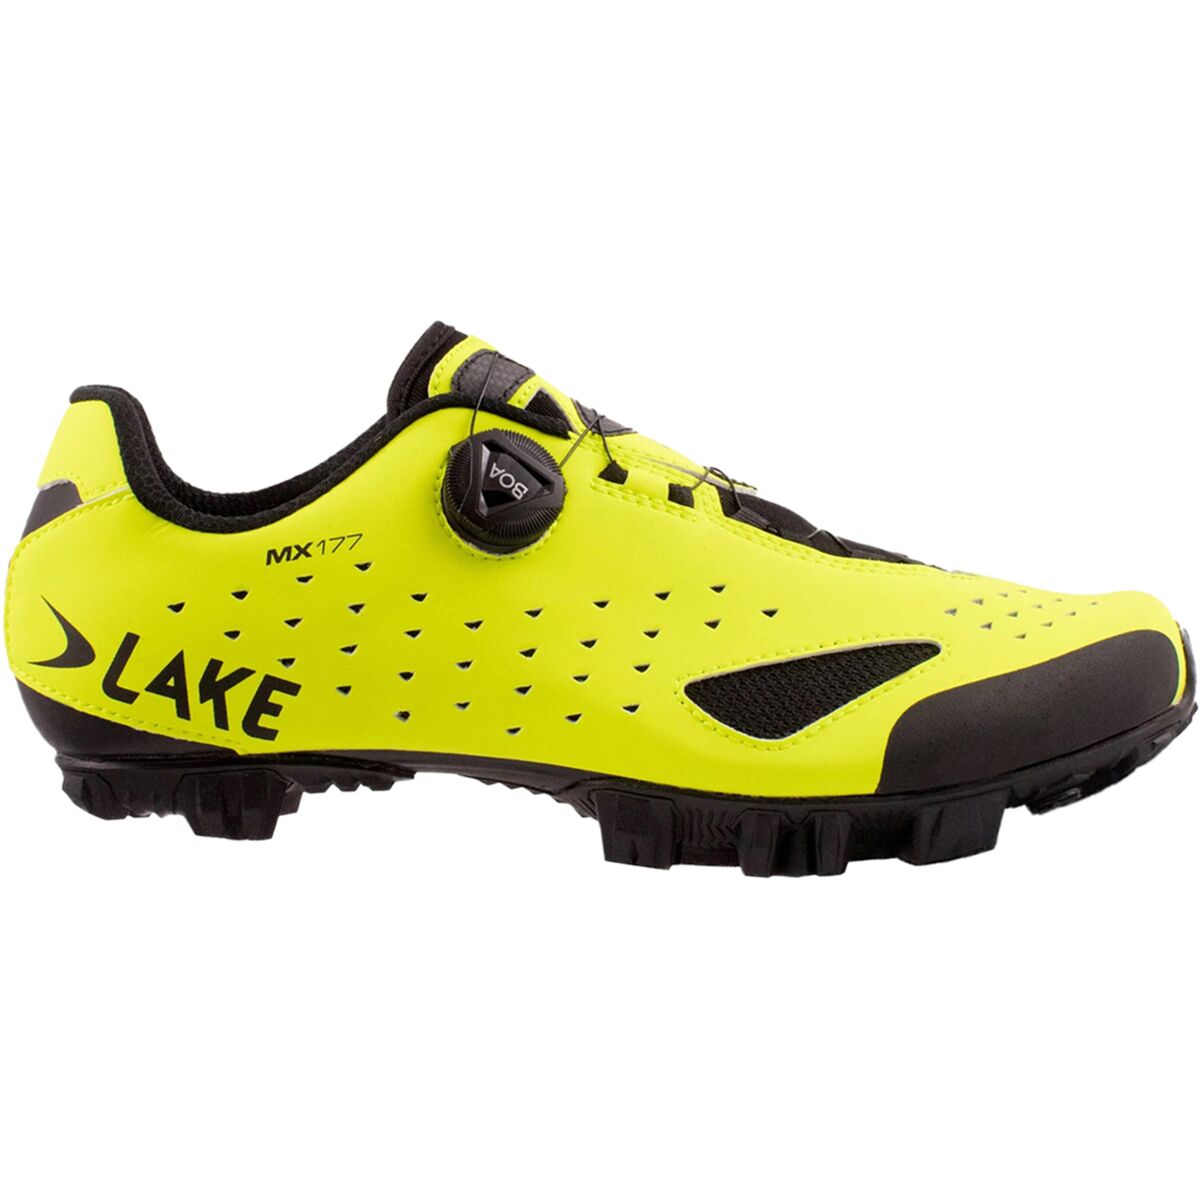 Lake MX177 Cycling Shoe - Men's